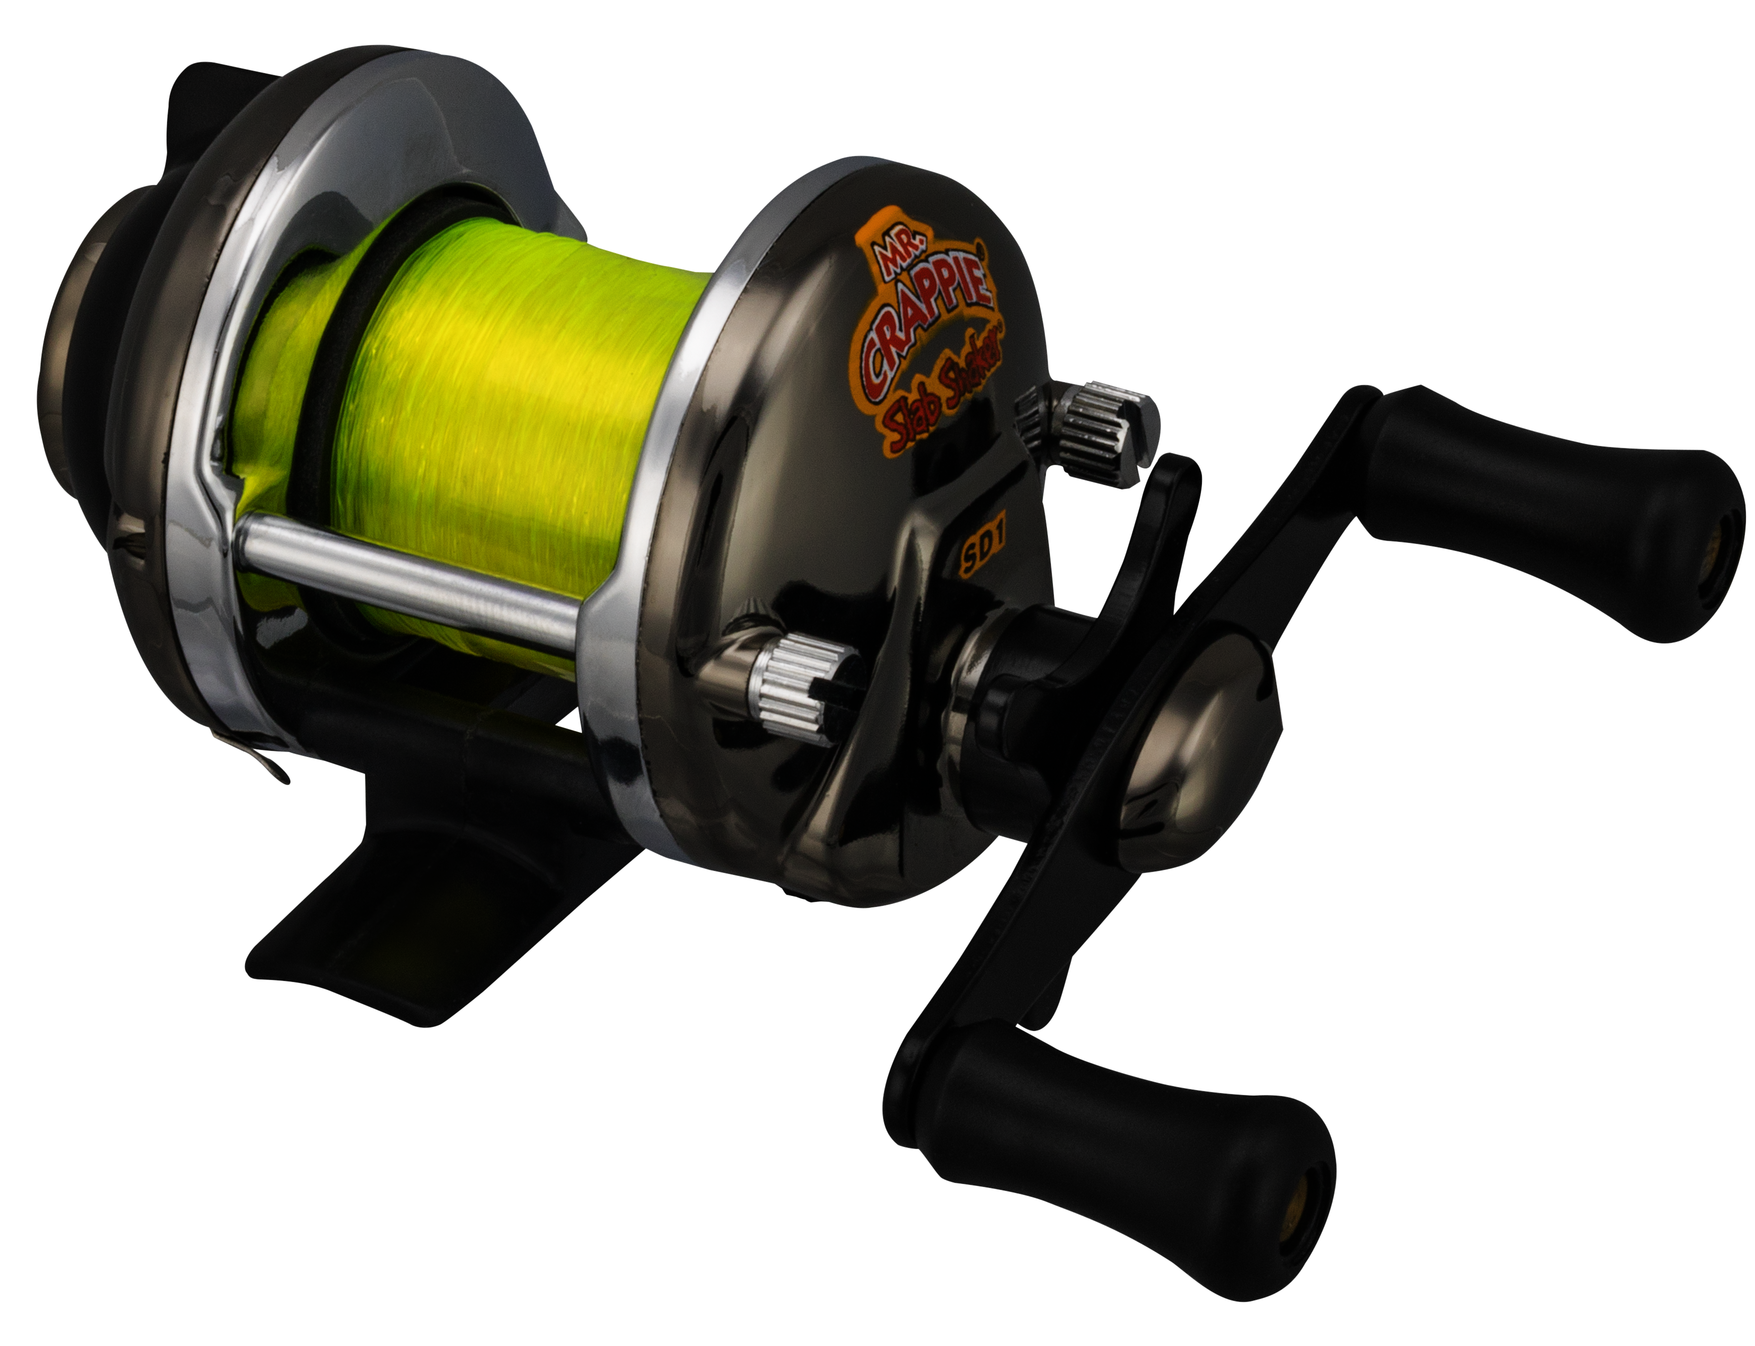 SD1,Mr Crappie Slab Shaker Reel (BLISTER) for Fishing